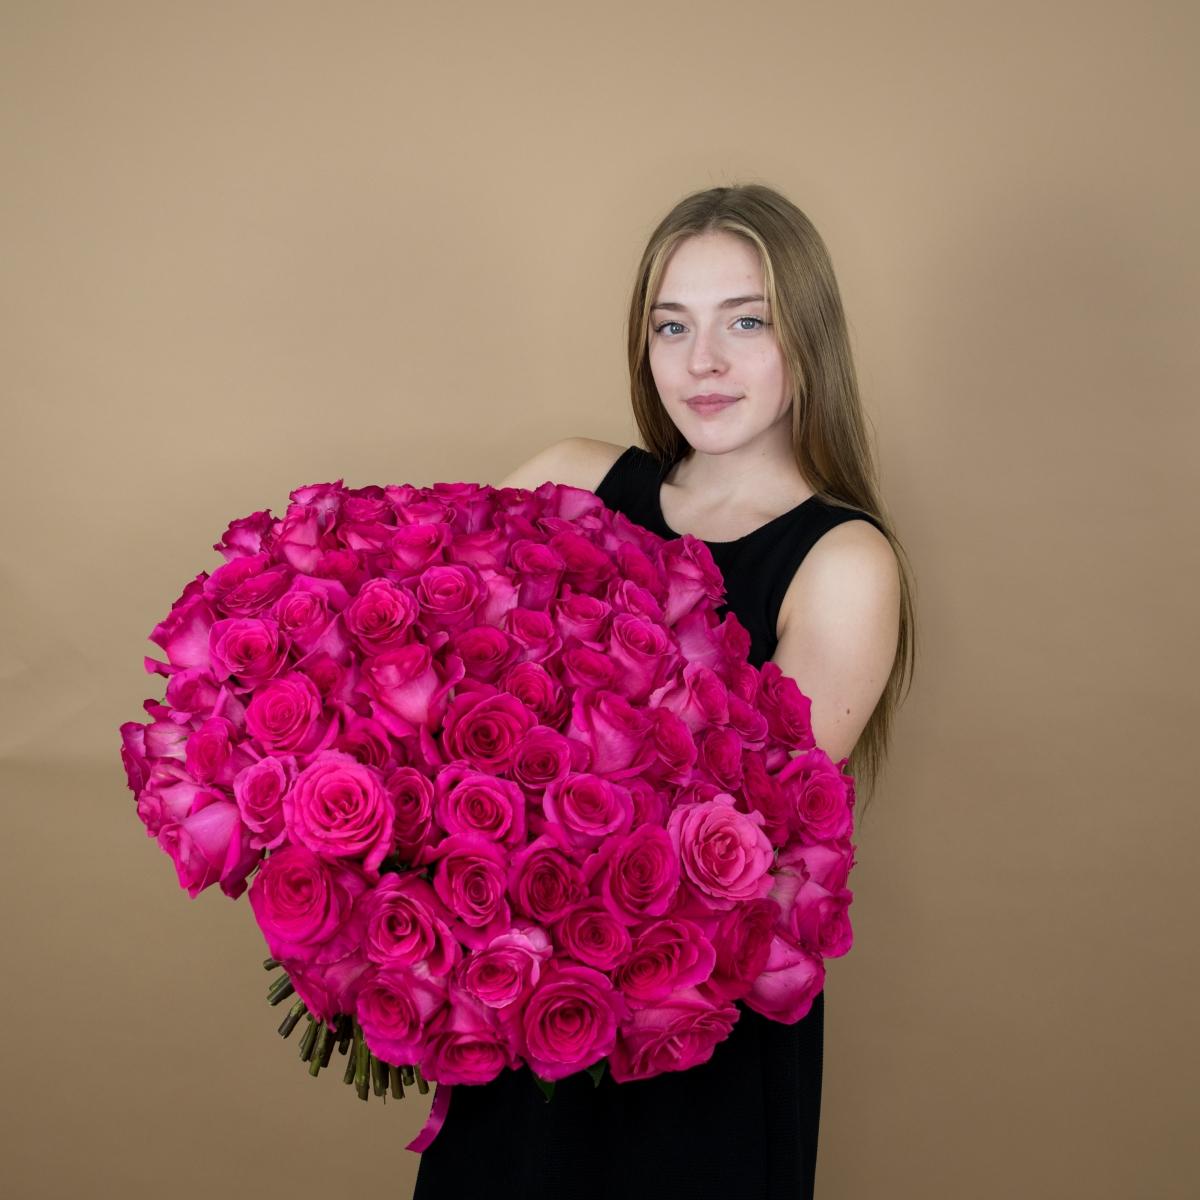 Букет из розовых роз 75 шт. (40 см) код товара - 84084